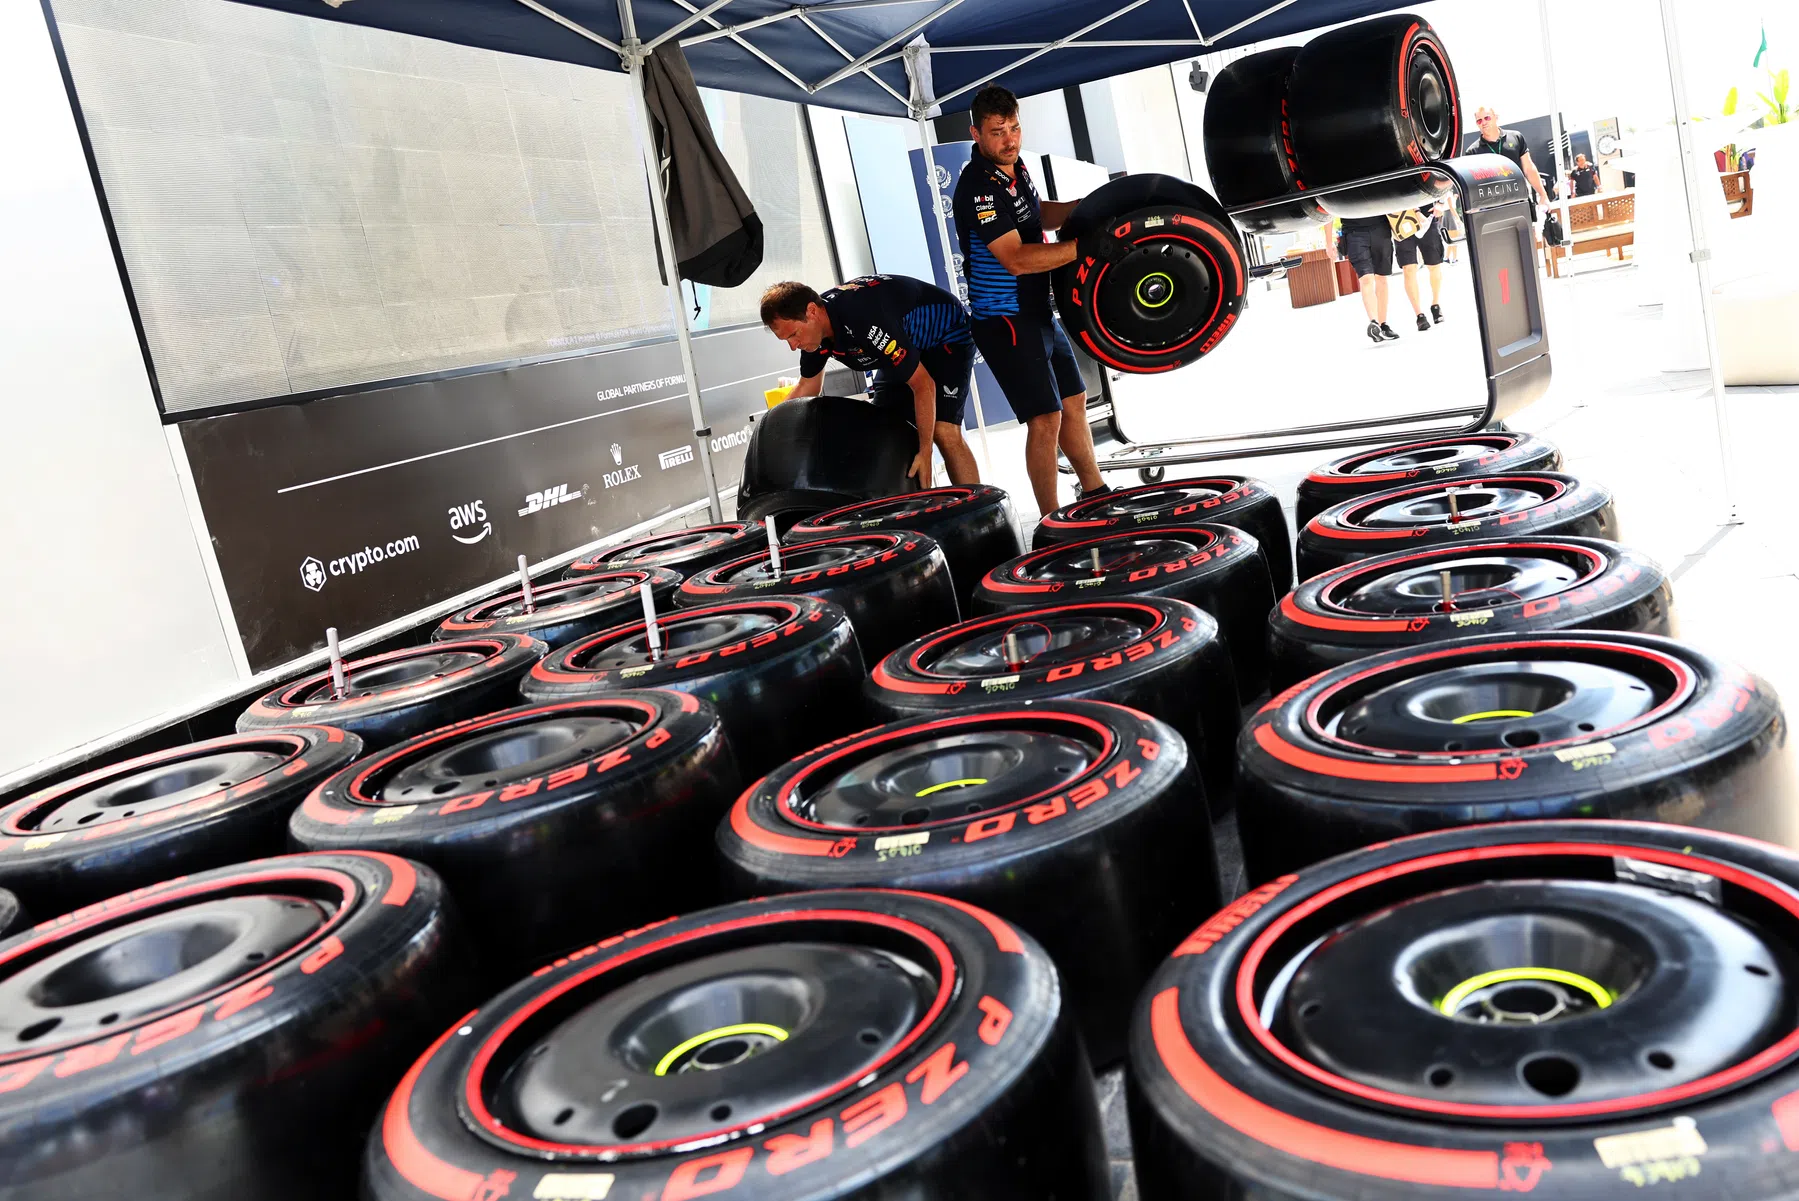 Os pneus Pirelli mudam em 2026 e isso será diferente